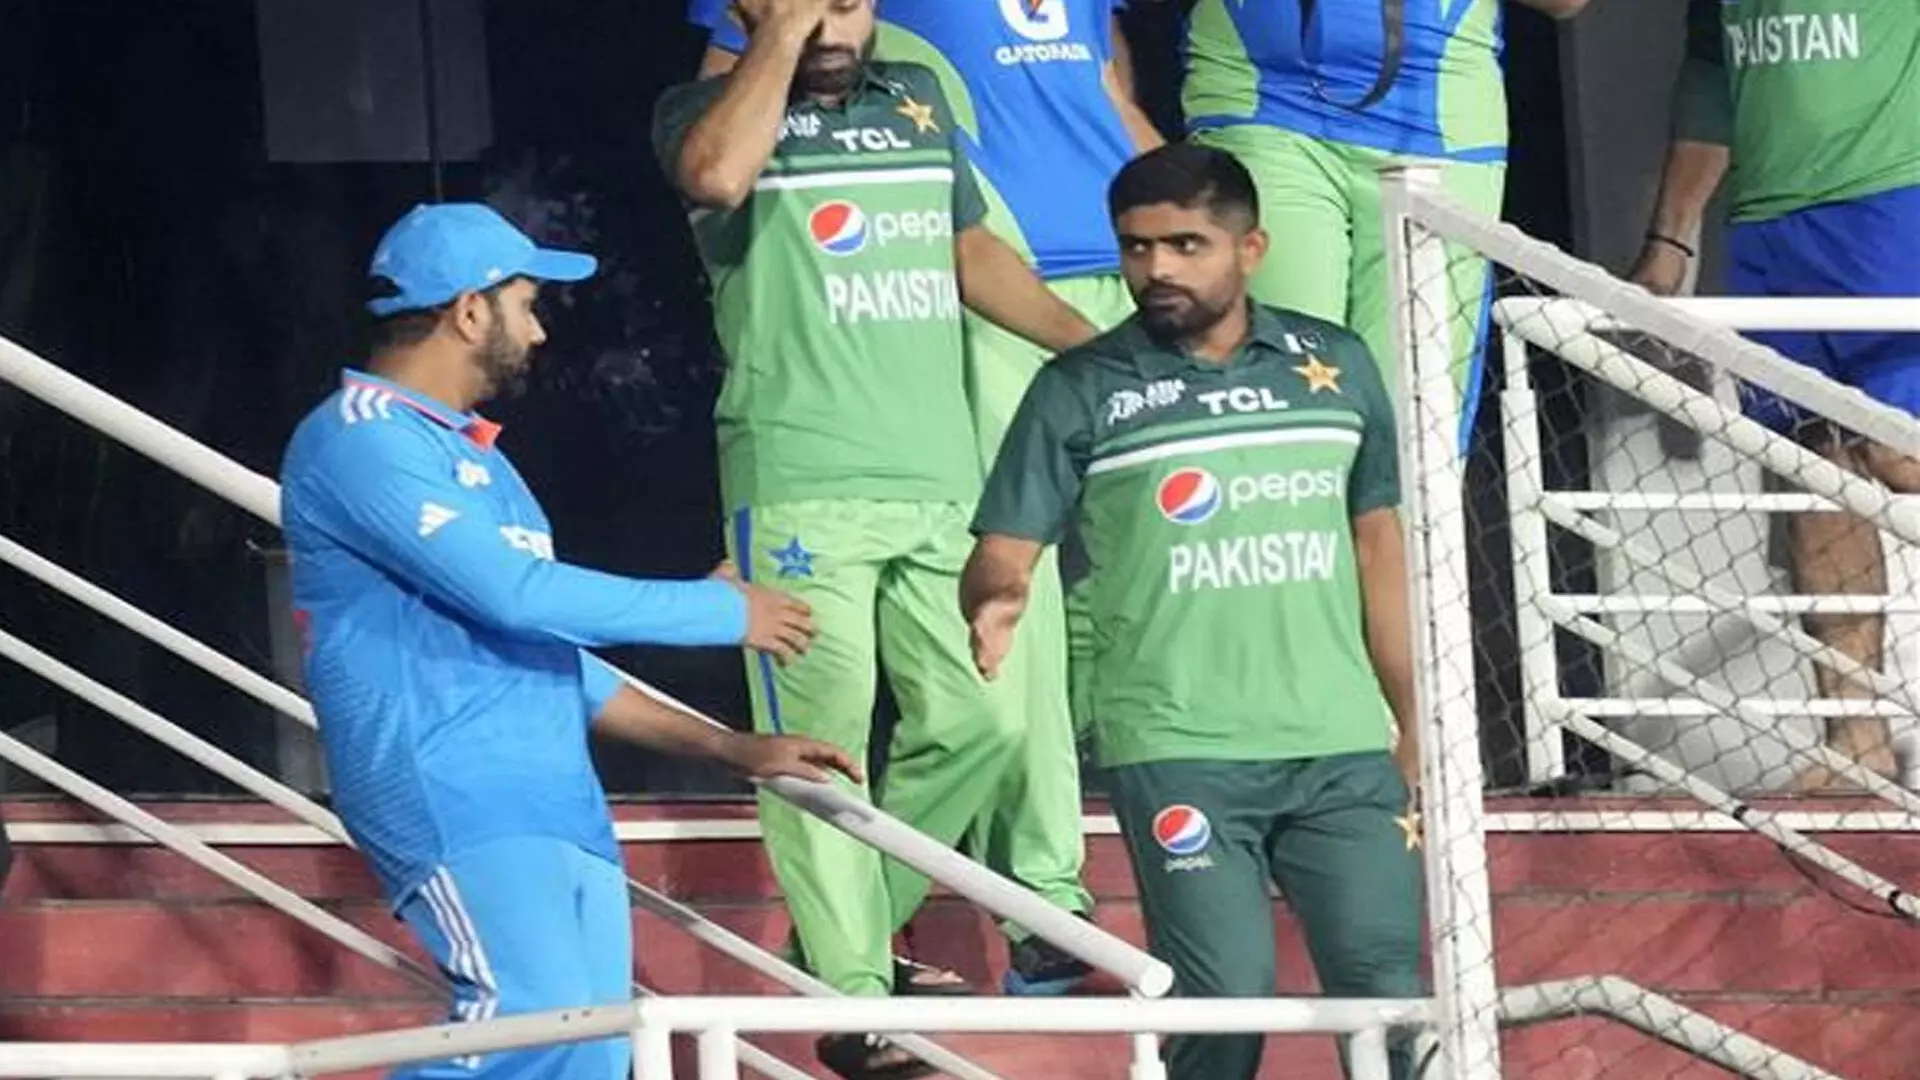 जब विश्व कप में भारत से खेलने की बात आती है तो पाकिस्तान मानसिक रूप से अवरुद्ध हो जाता है- मिस्बाह-उल-हक